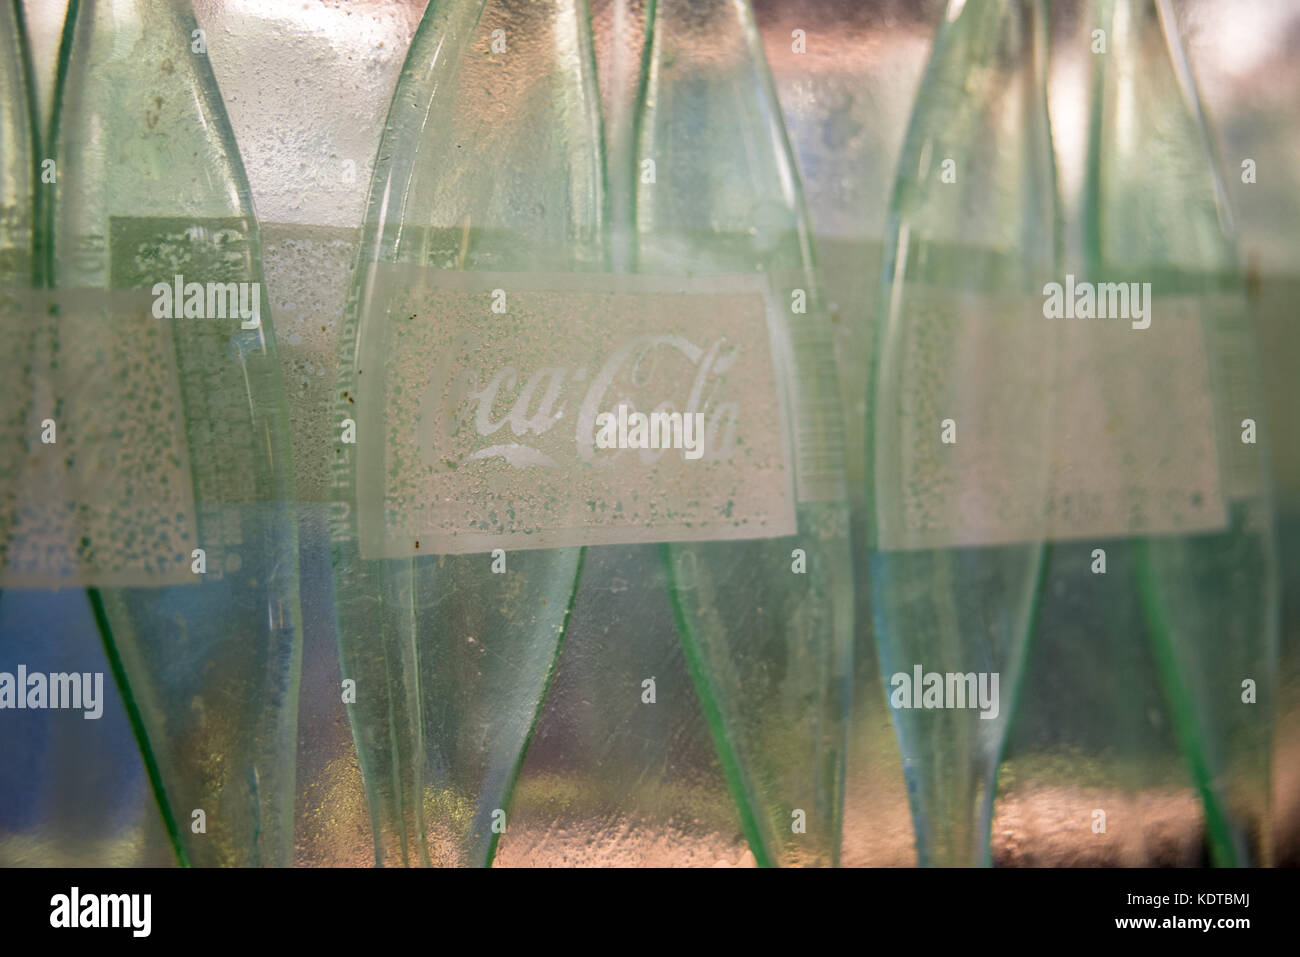 Détail de l'appareil d'éclairage à la main créée à partir de bouteilles de coca-cola réaffecté par verrier kathleen plaque pour Chick-fil-a. (Usa) Banque D'Images